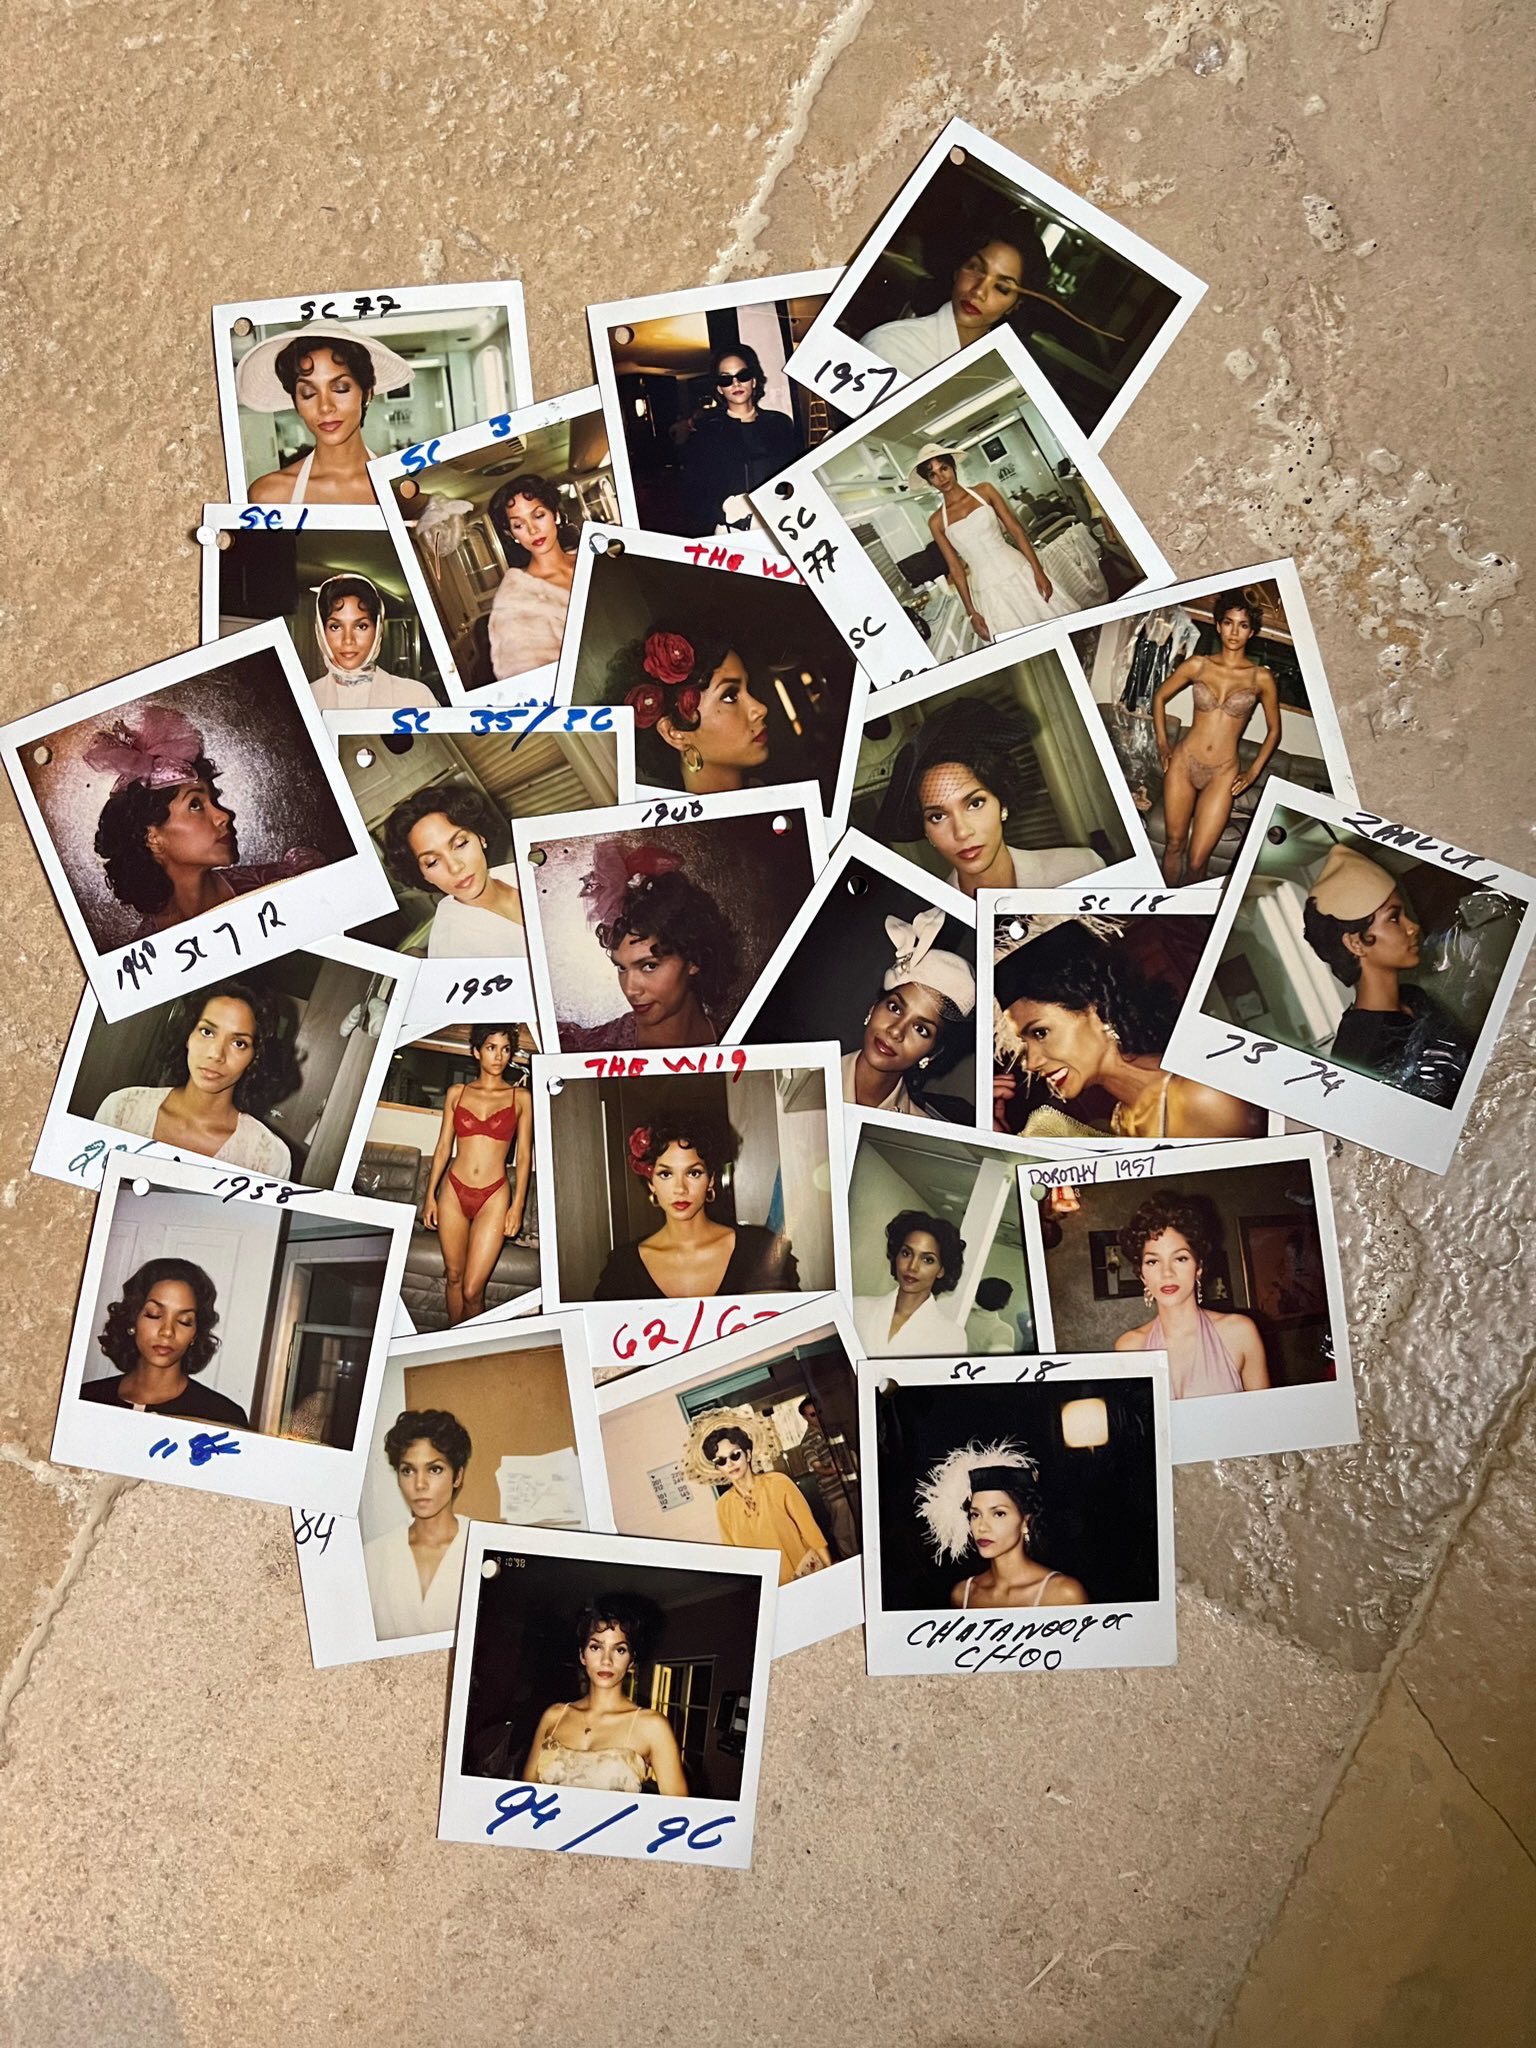 FOTOS Halle Berry comparte algunos retrocesos de lencera de los 90! - Photo 1